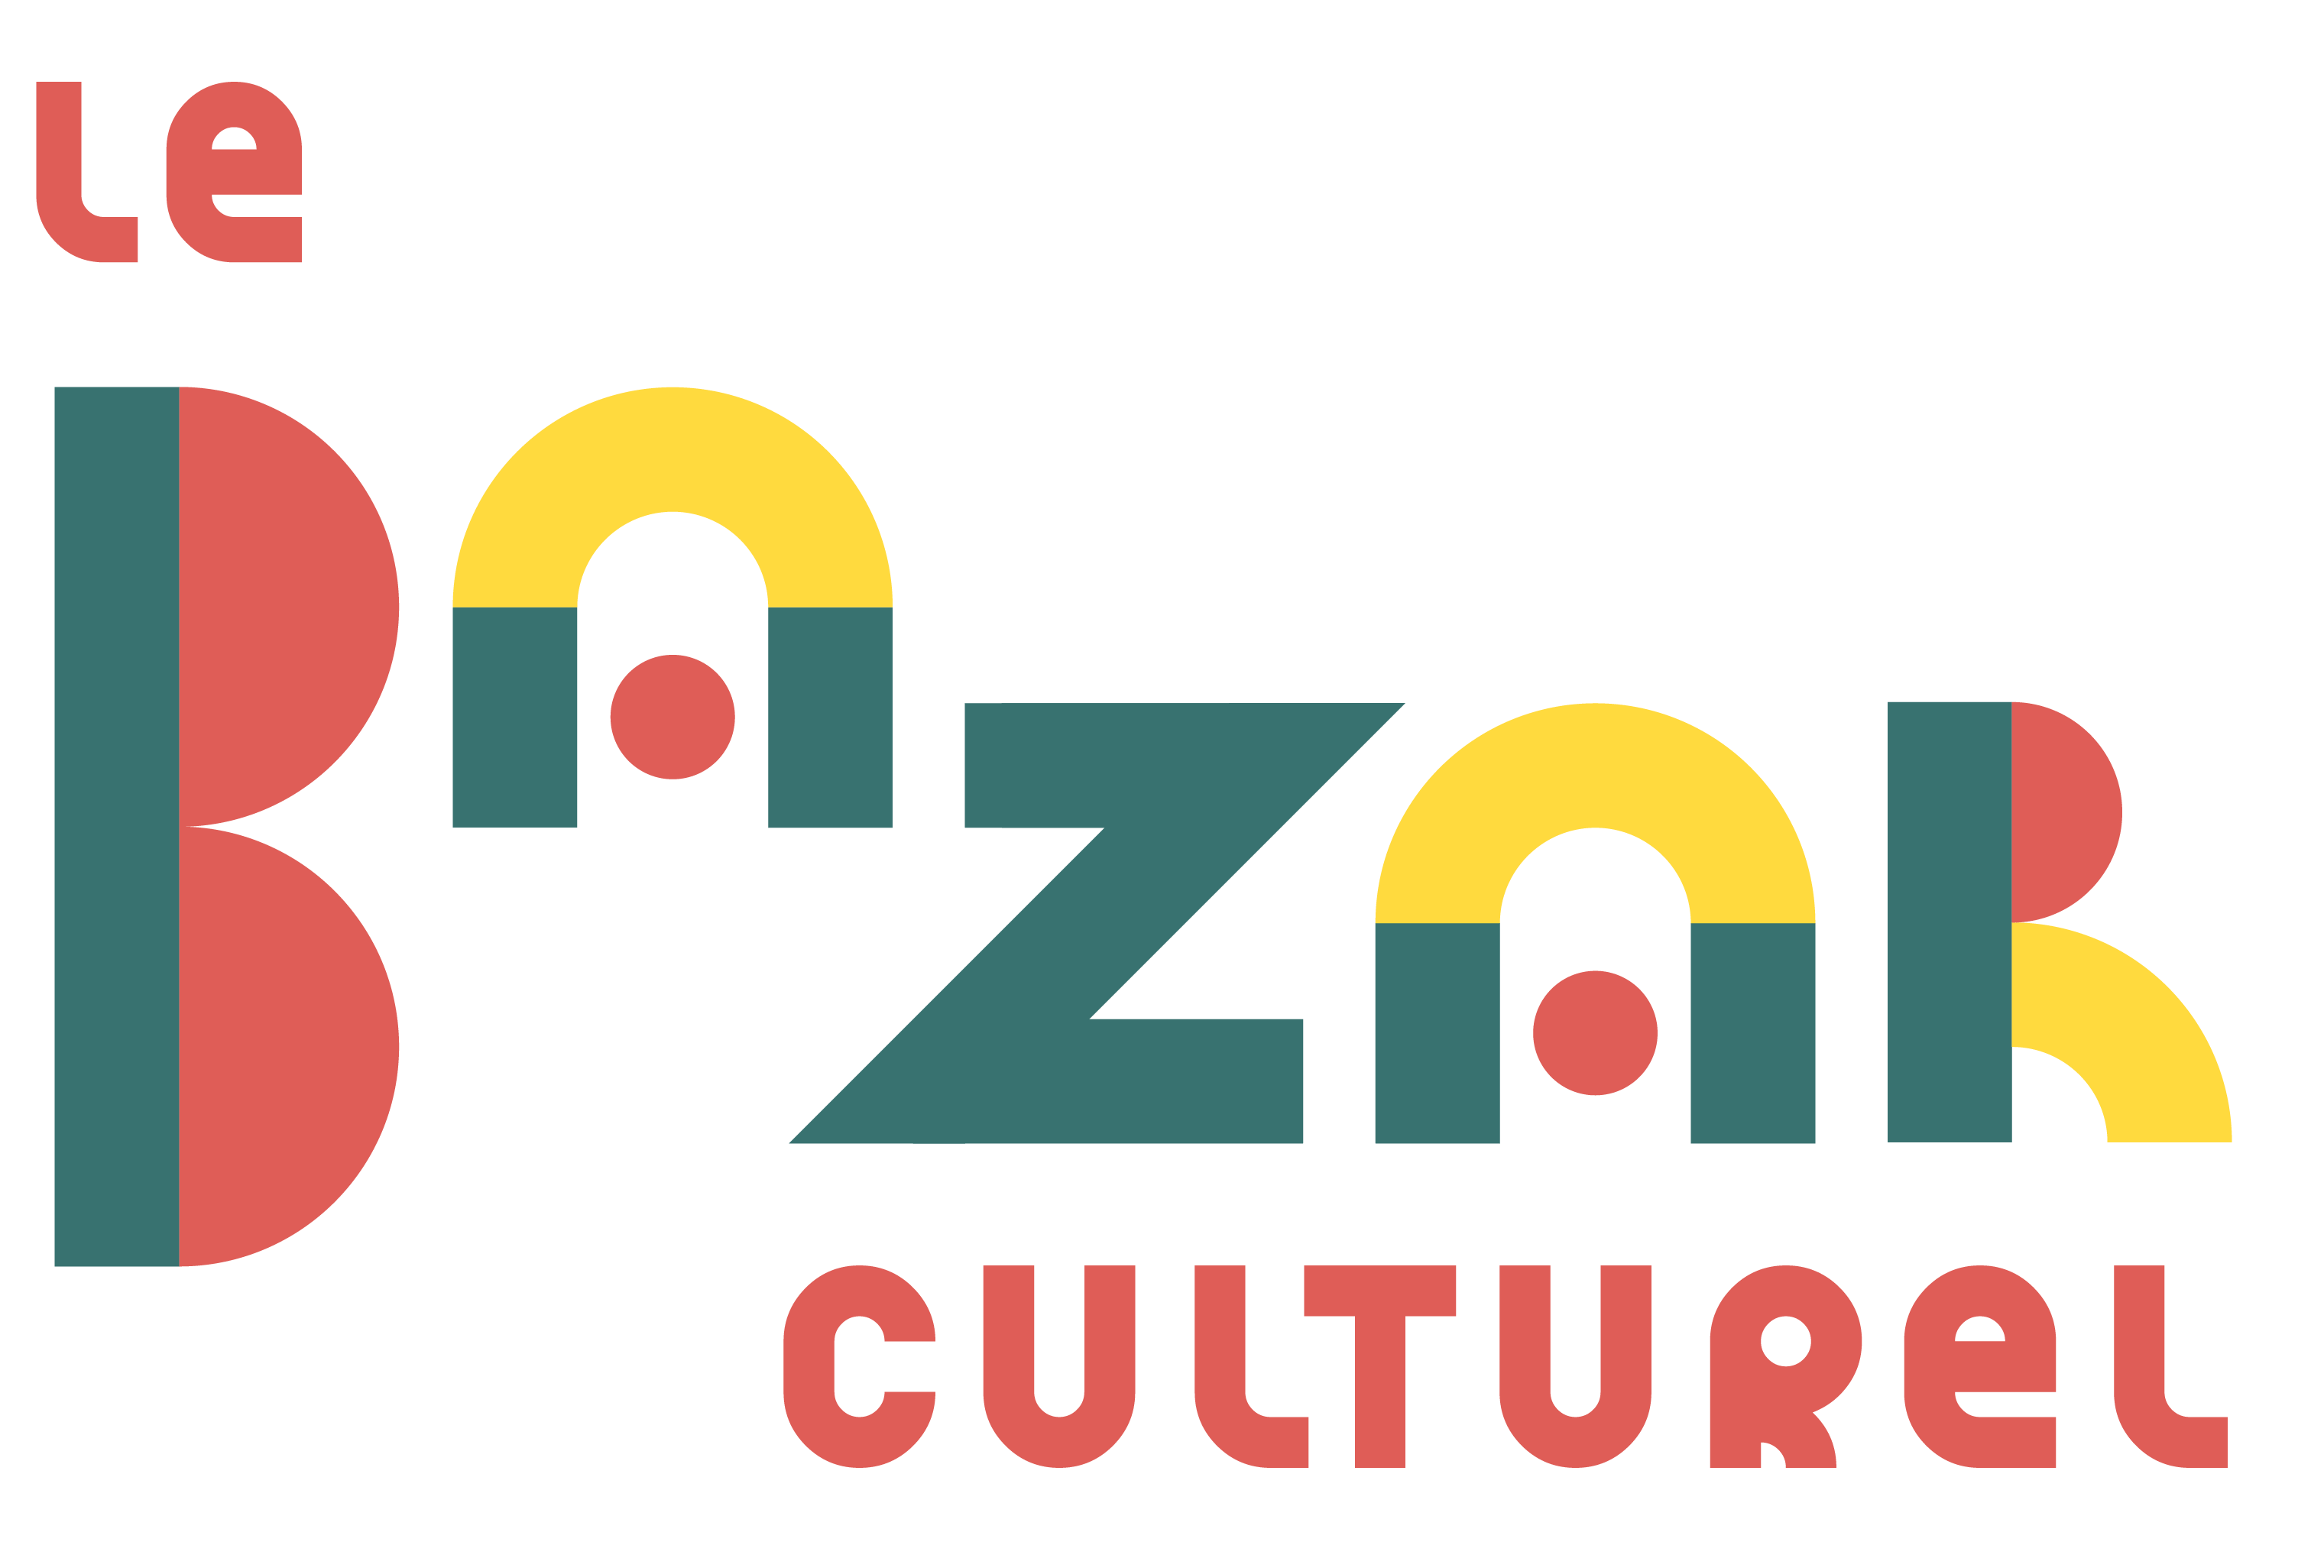 Le Bazar Culturel